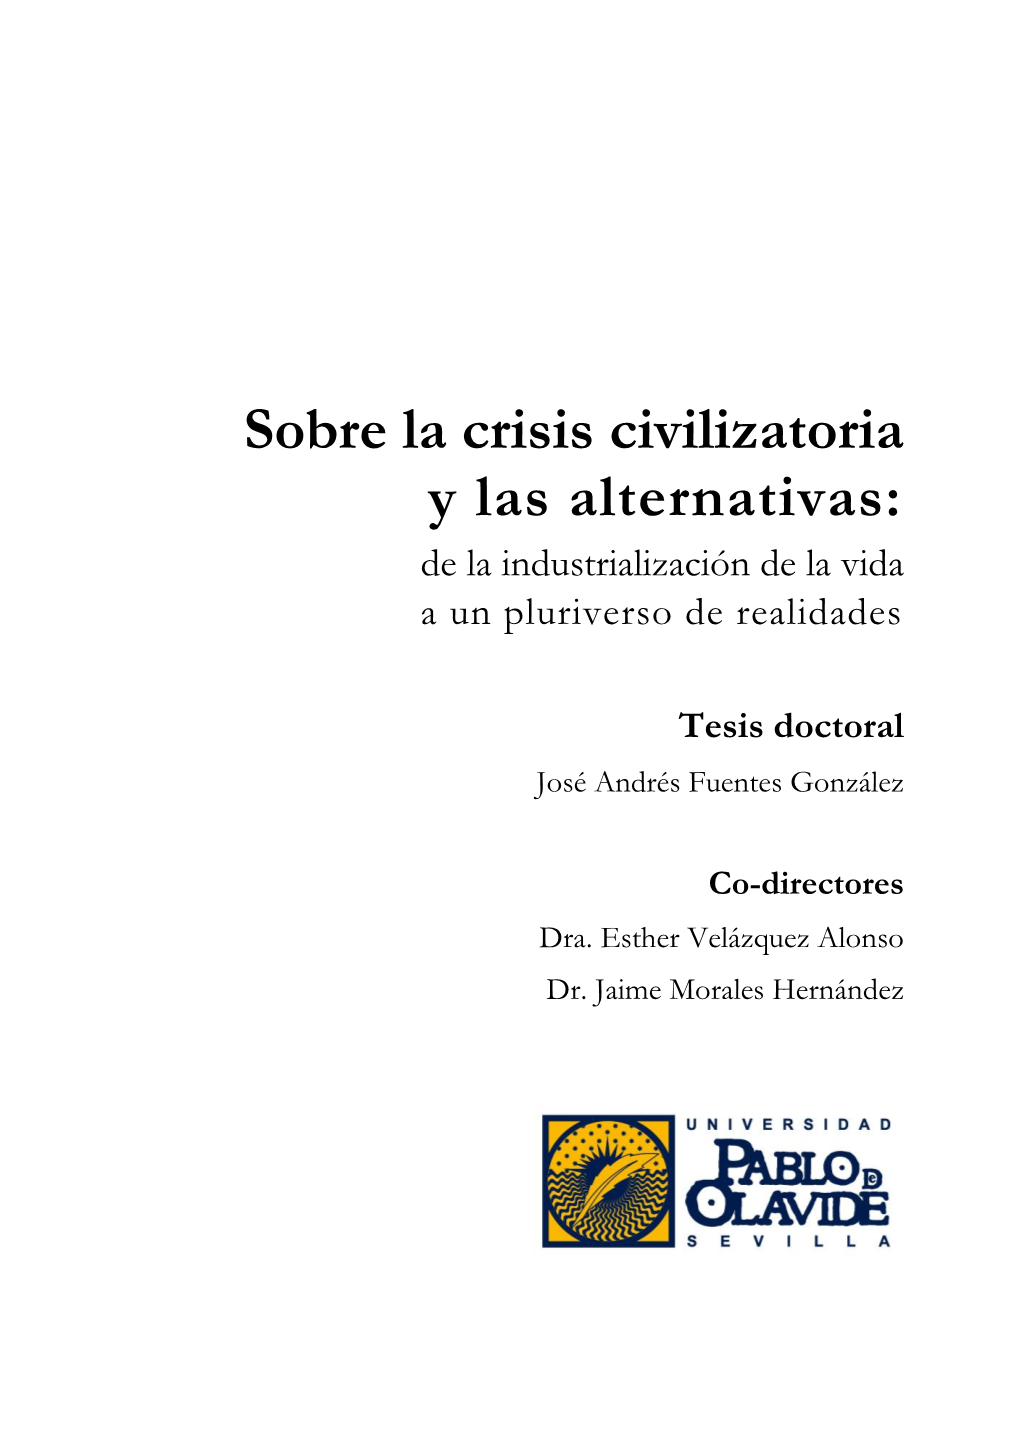 Sobre La Crisis Civilizatoria Y Las Alternativas: De La Industrialización De La Vida a Un Pluriverso De Realidades